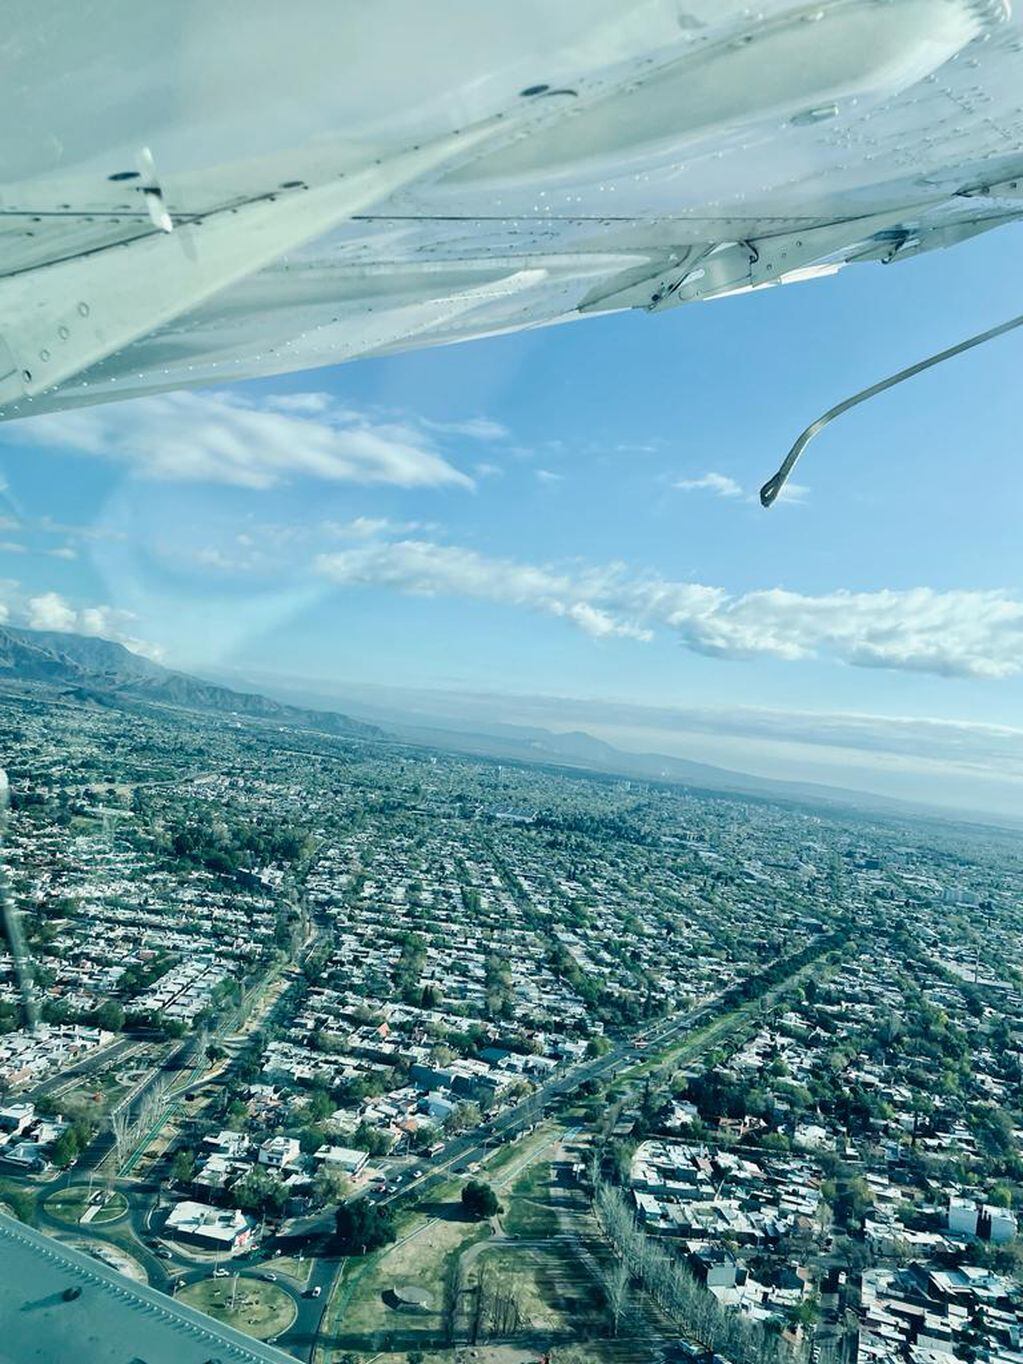 La vista desde el avión Safari. - Los Andes